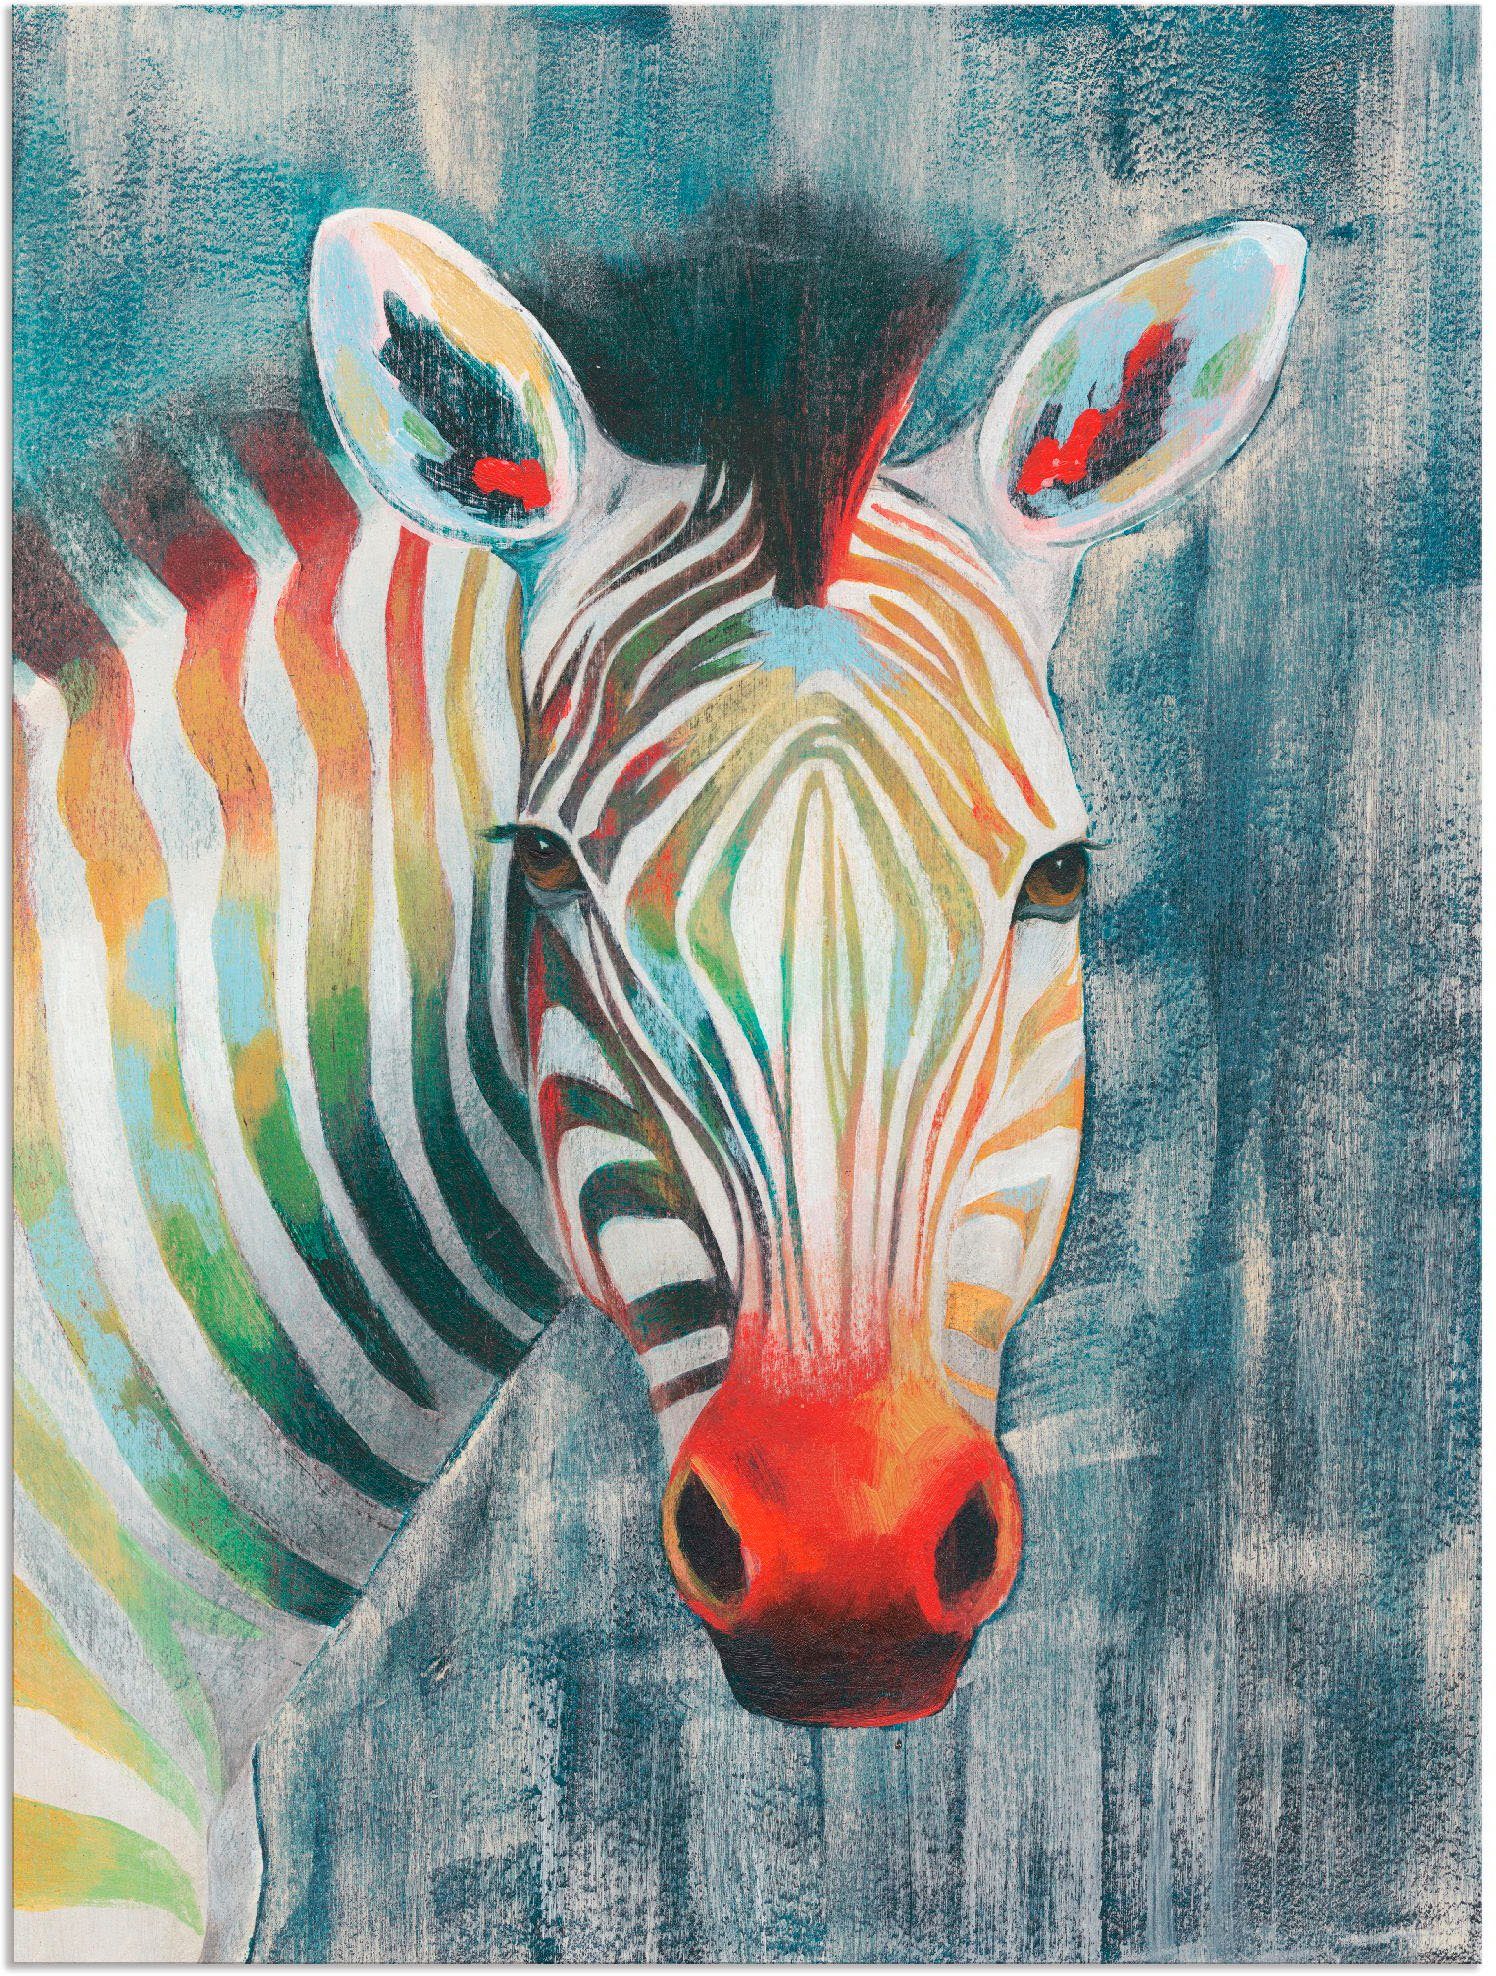 Artland Artprint Prisma zebra I in vele afmetingen & productsoorten - artprint van aluminium / artprint voor buiten, artprint op linnen, poster, muursticker / wandfolie ook geschik